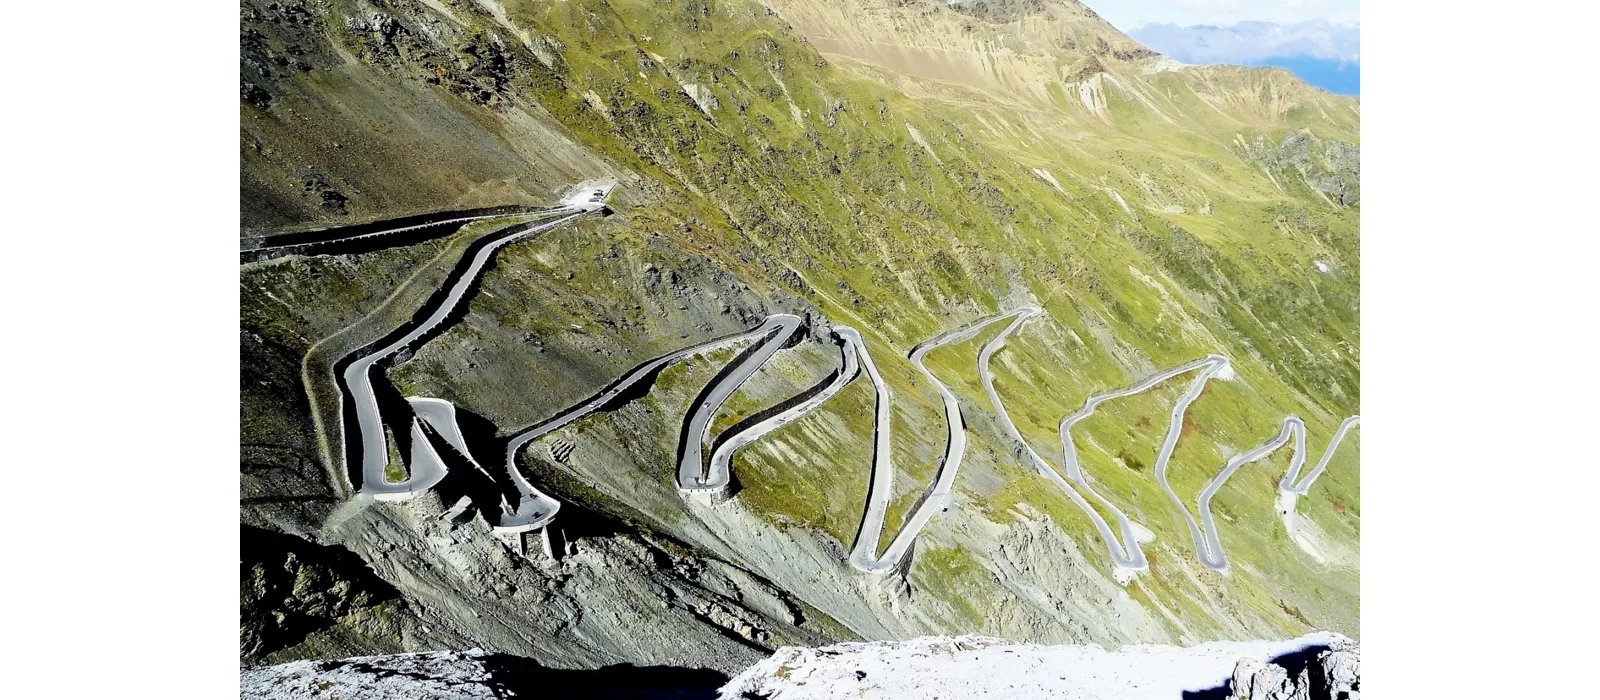 Subir los Alpes Réticos en bicicleta, desde Prato allo Stelvio hasta el Passo dello Stelvio